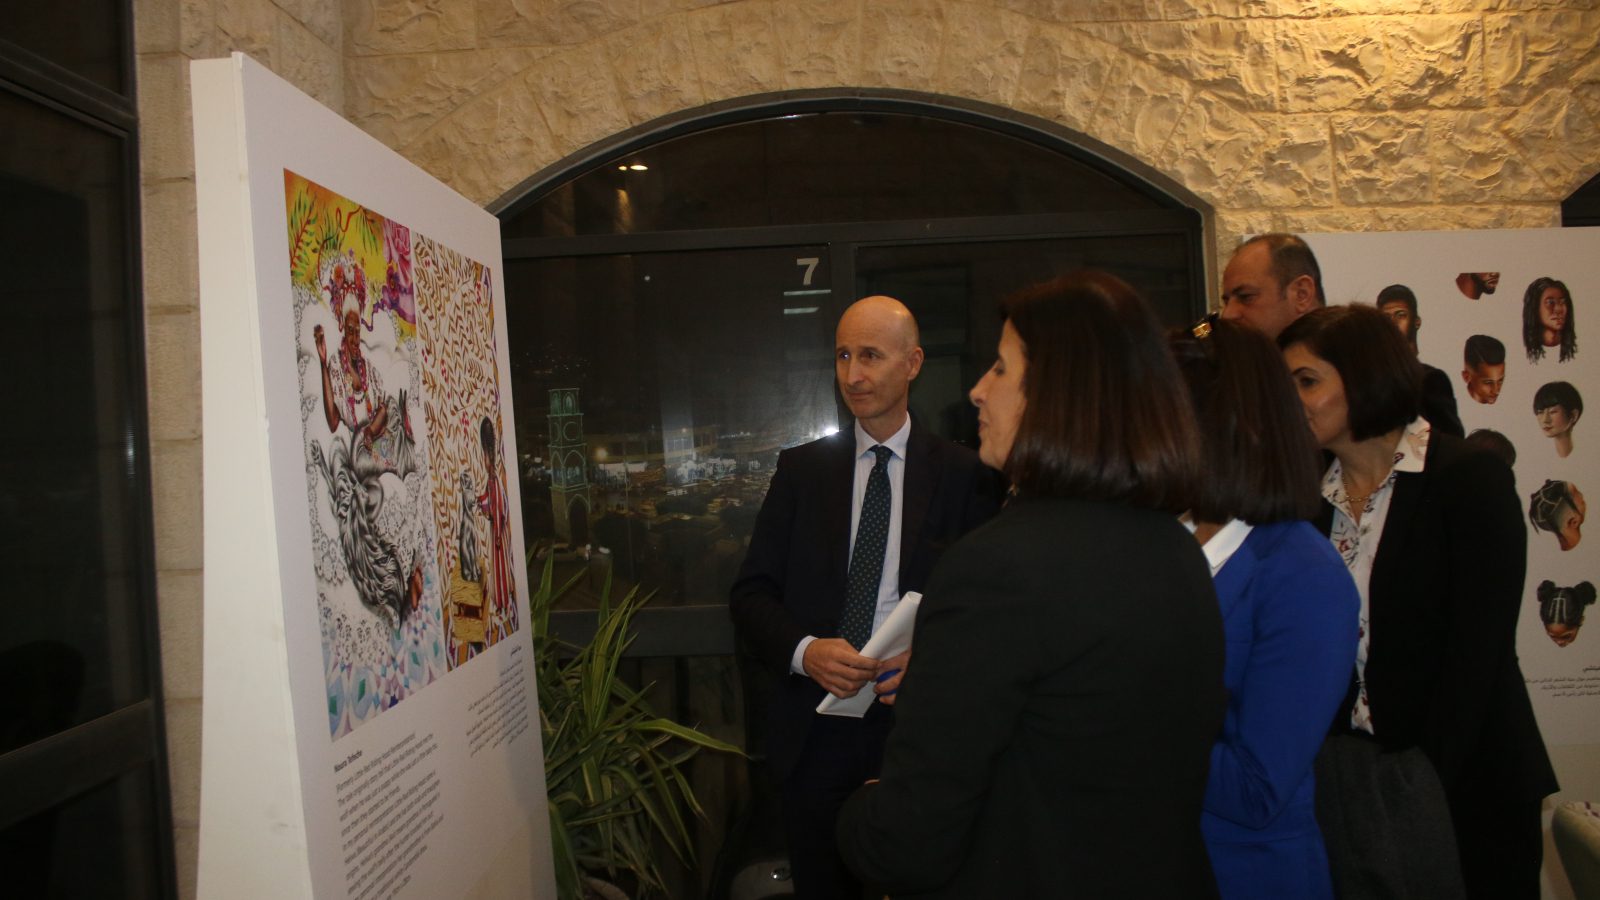 مشروع حبكة هو مبادرة مشتركة بين الاتحاد الأوروبي والفنّانين الفلسطينيين 